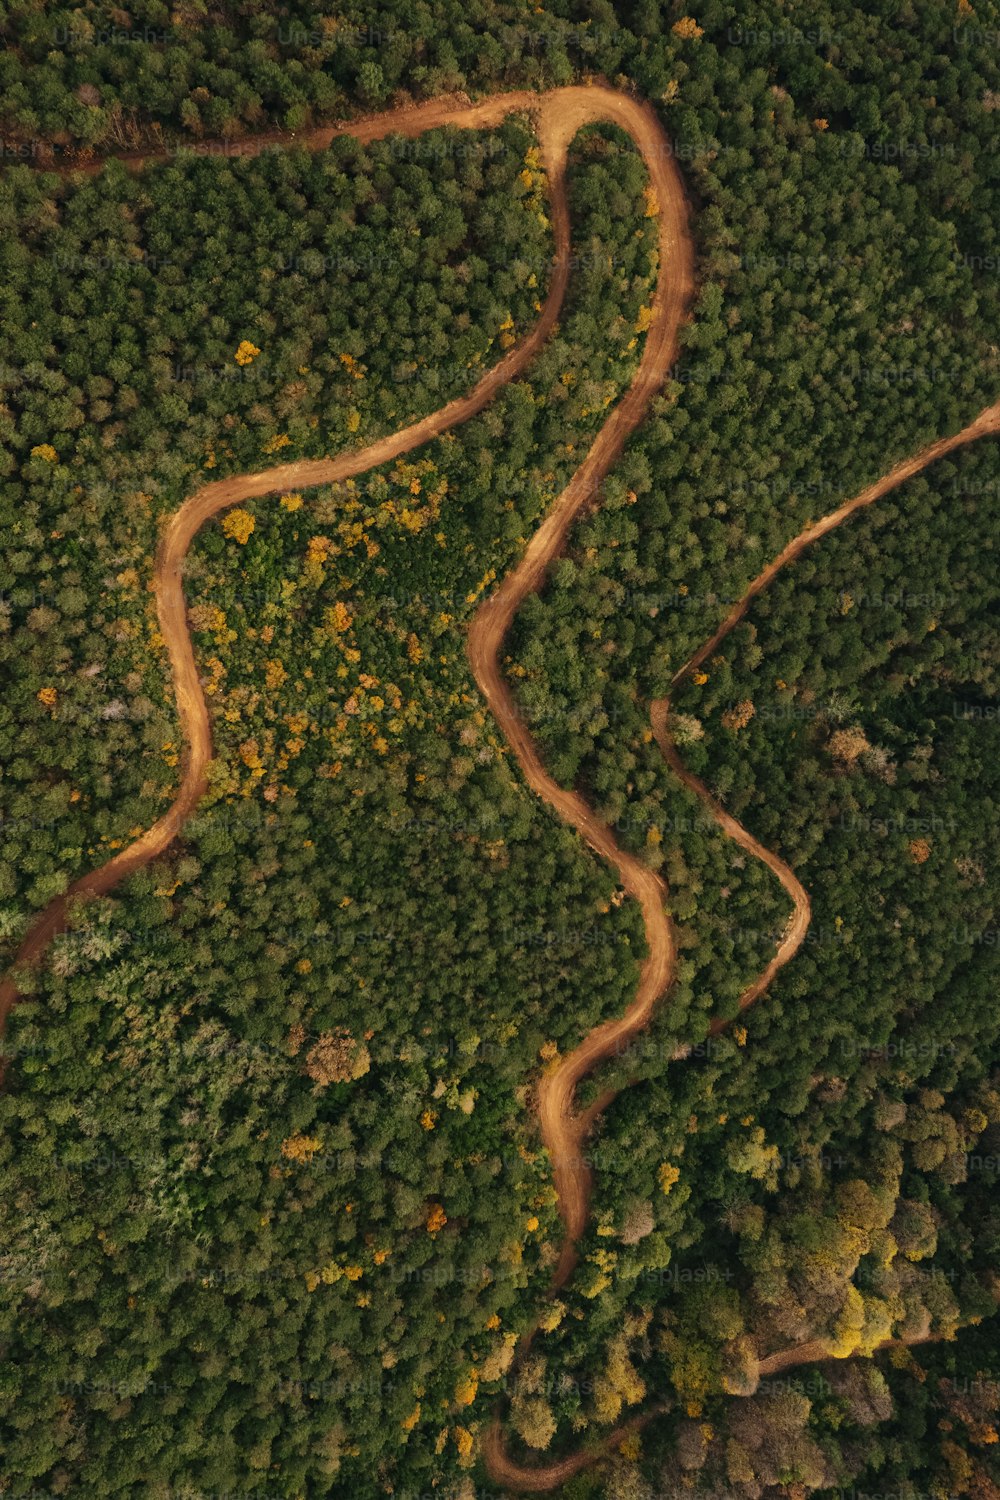 Une route sinueuse au milieu d’une forêt